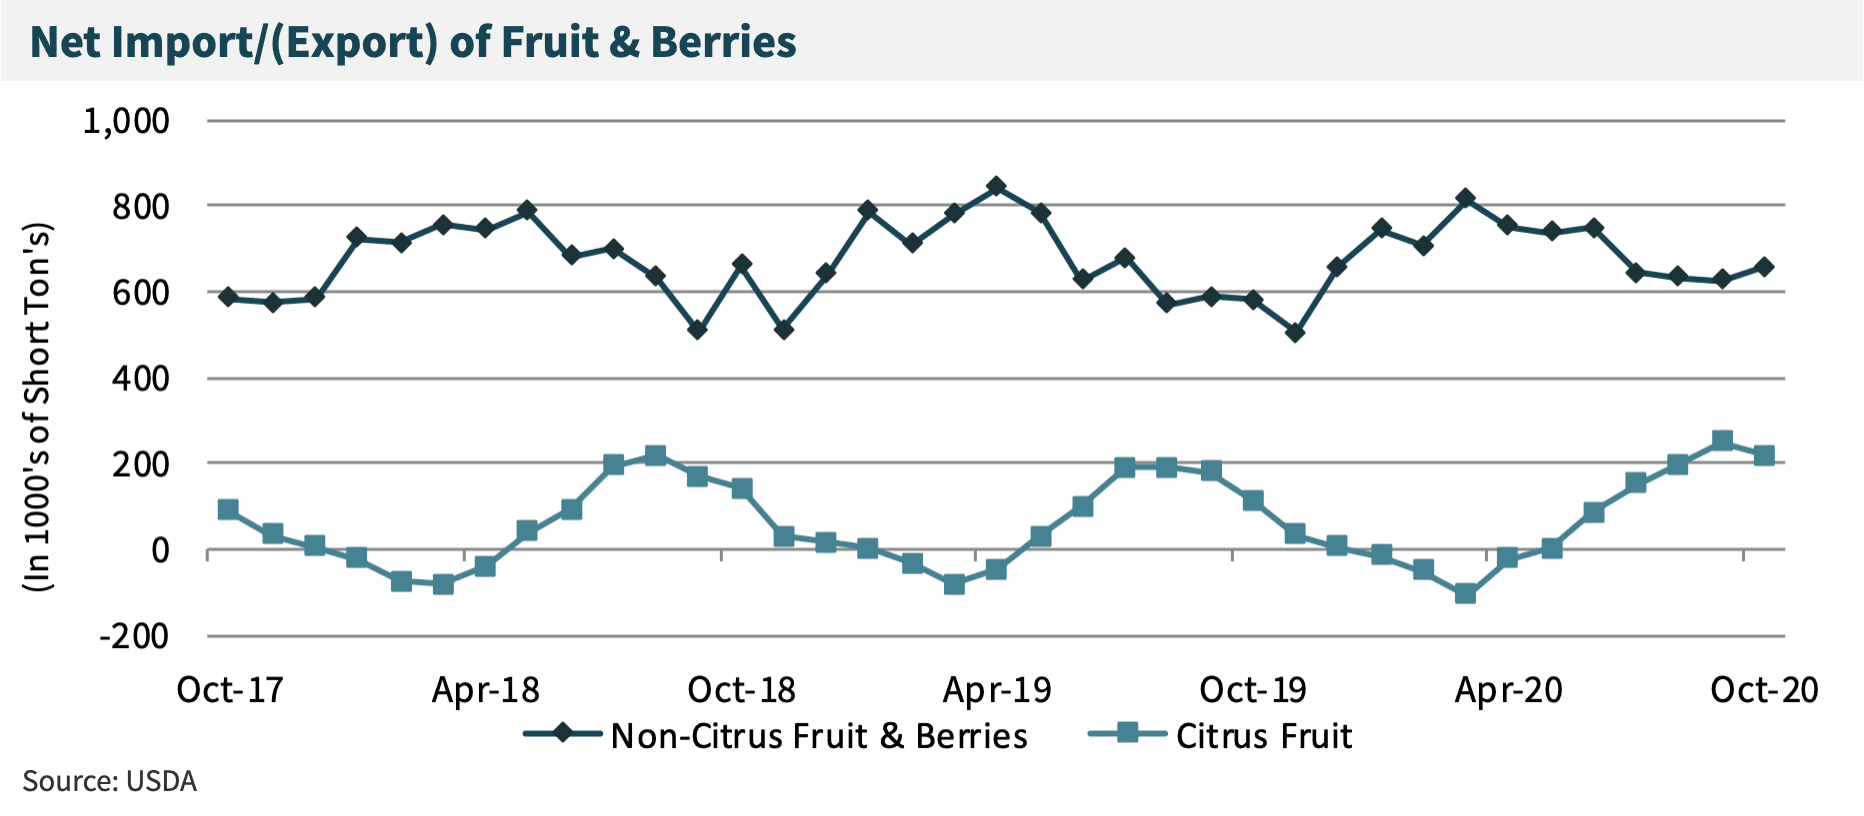 Net Import/(Export) of Fruit & Berries